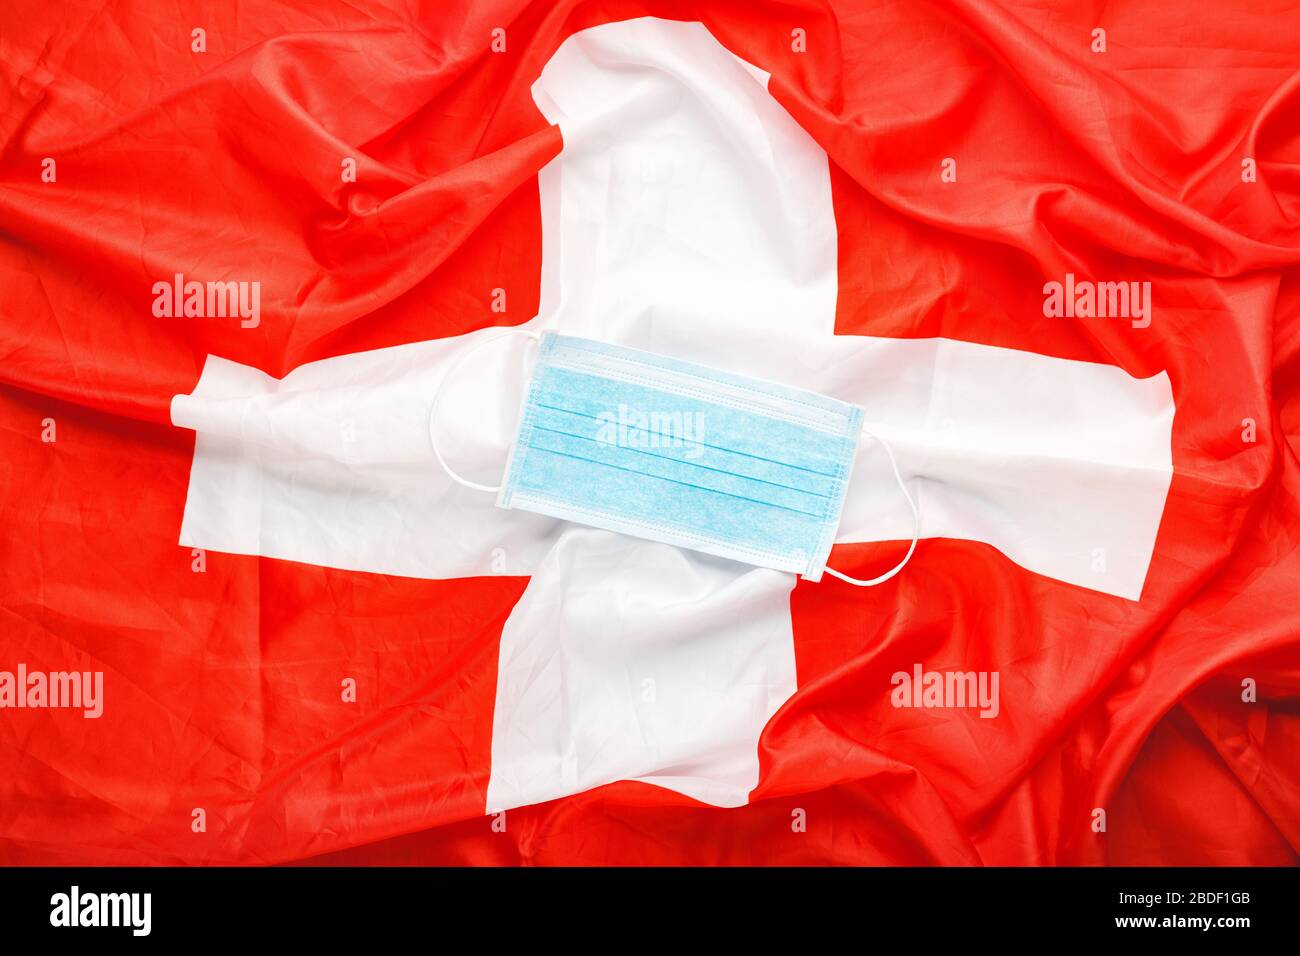 Swiss Medical Stockfotos und -bilder Kaufen - Alamy